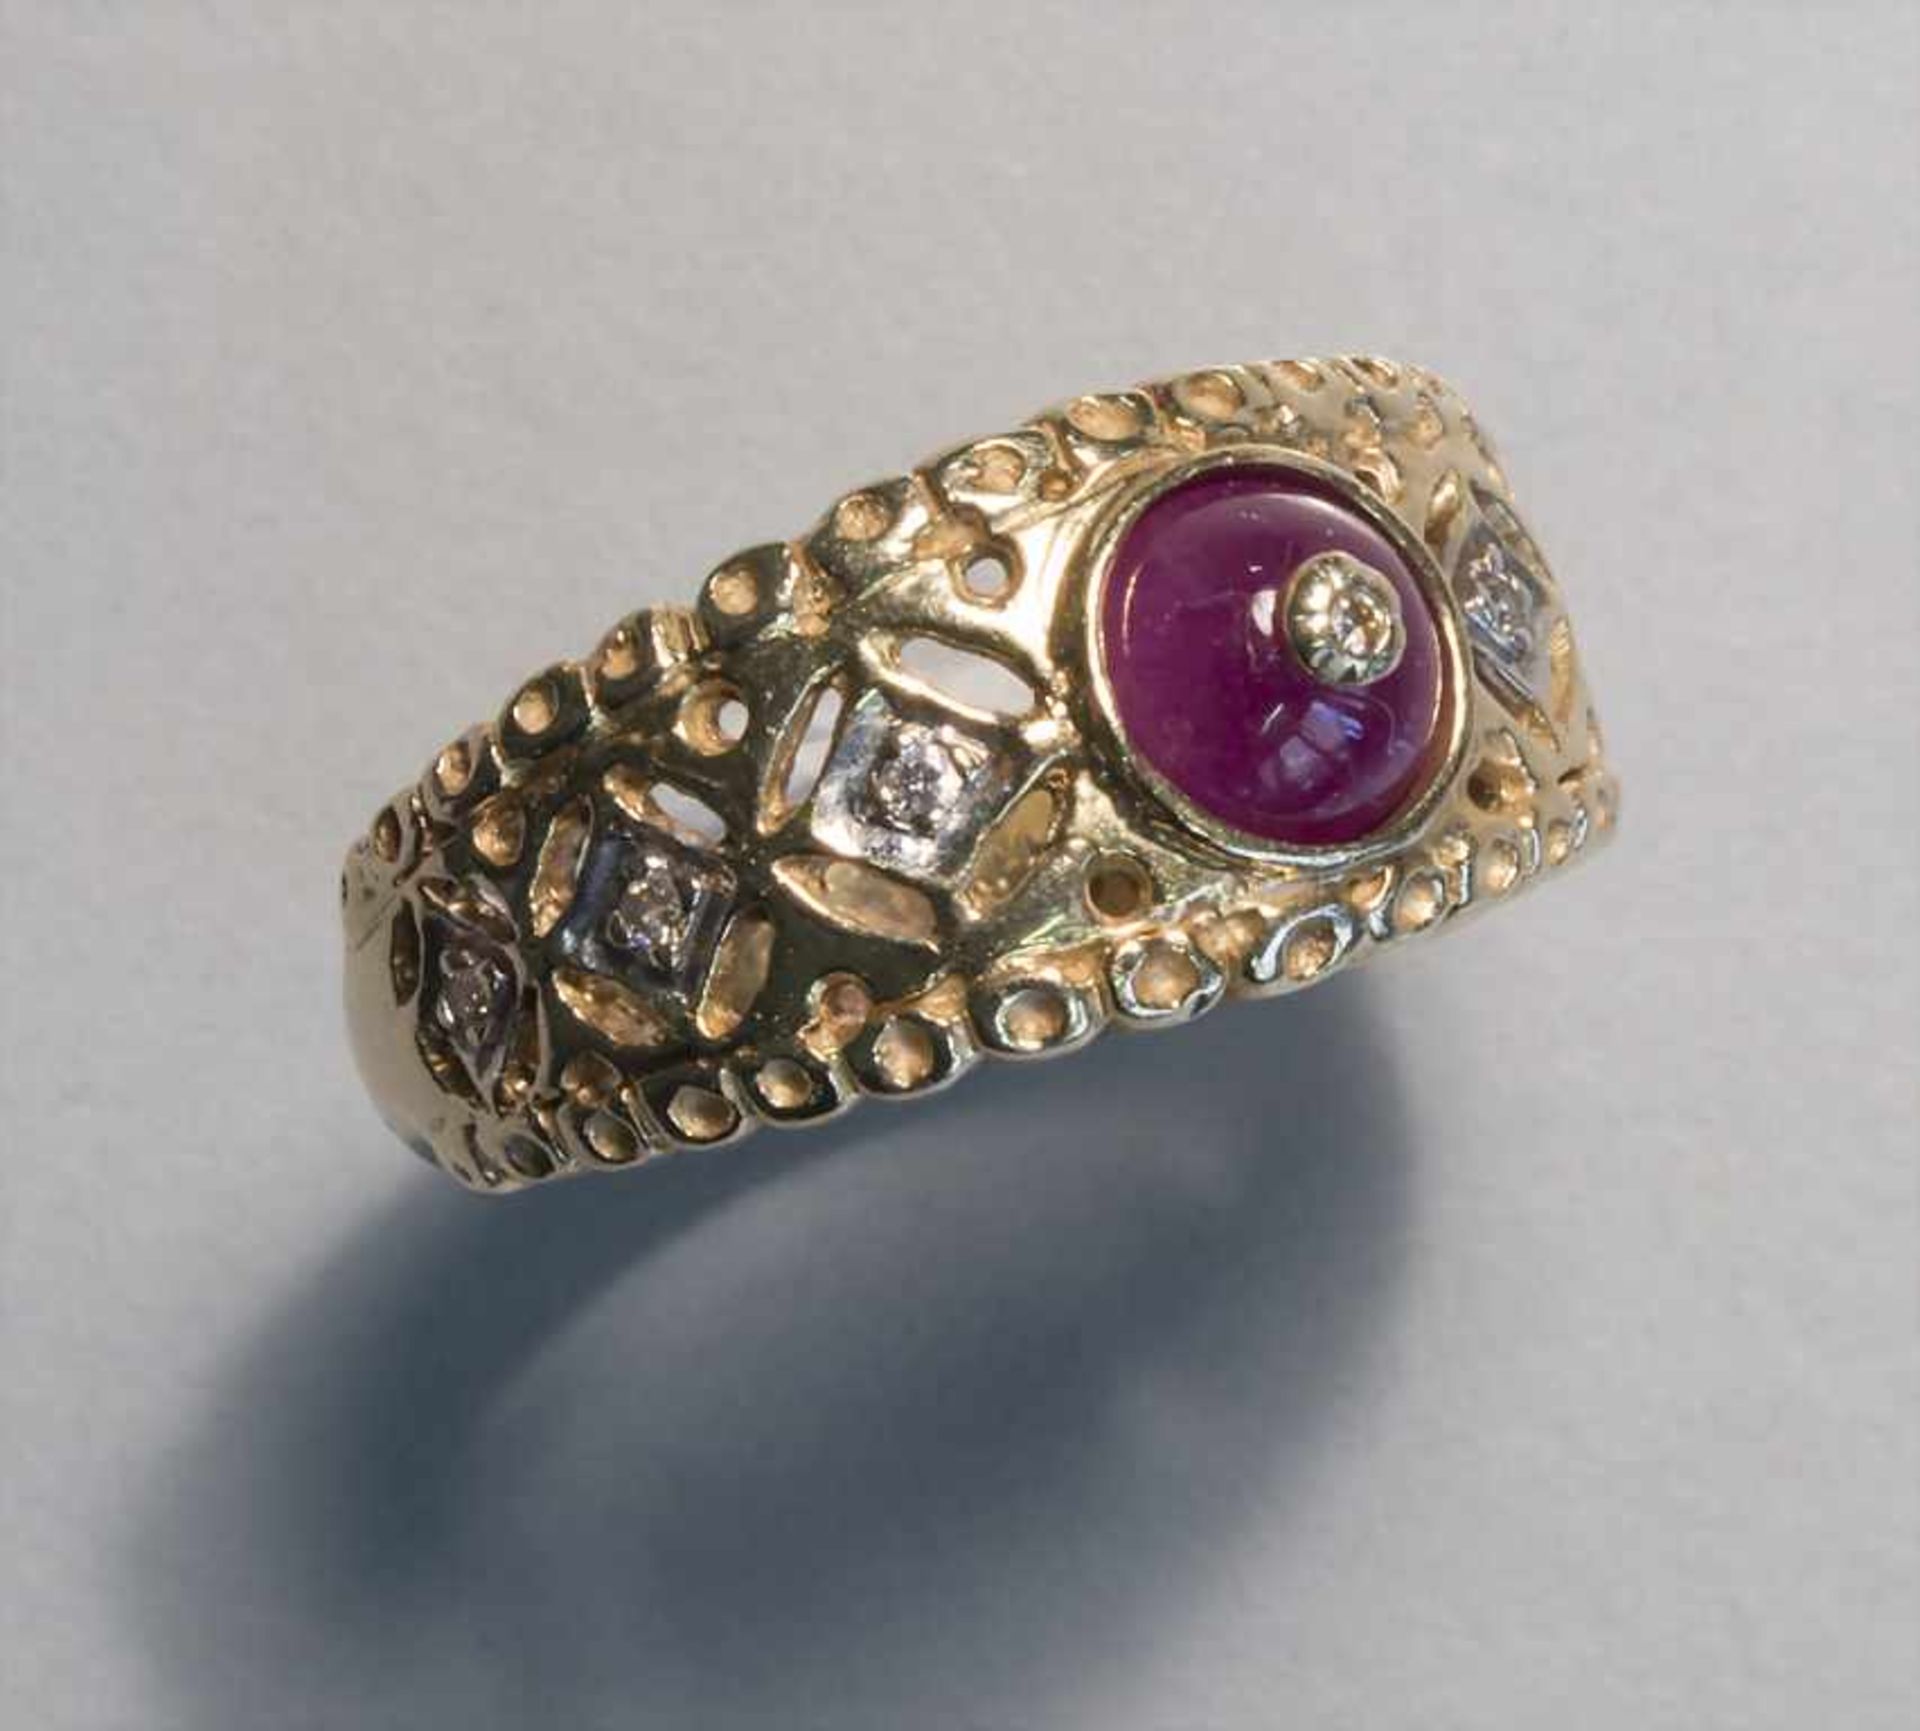 Damenring mit violettem Stein und Diamanten / A ladies ring with a violet stone and diamonds - Bild 2 aus 4